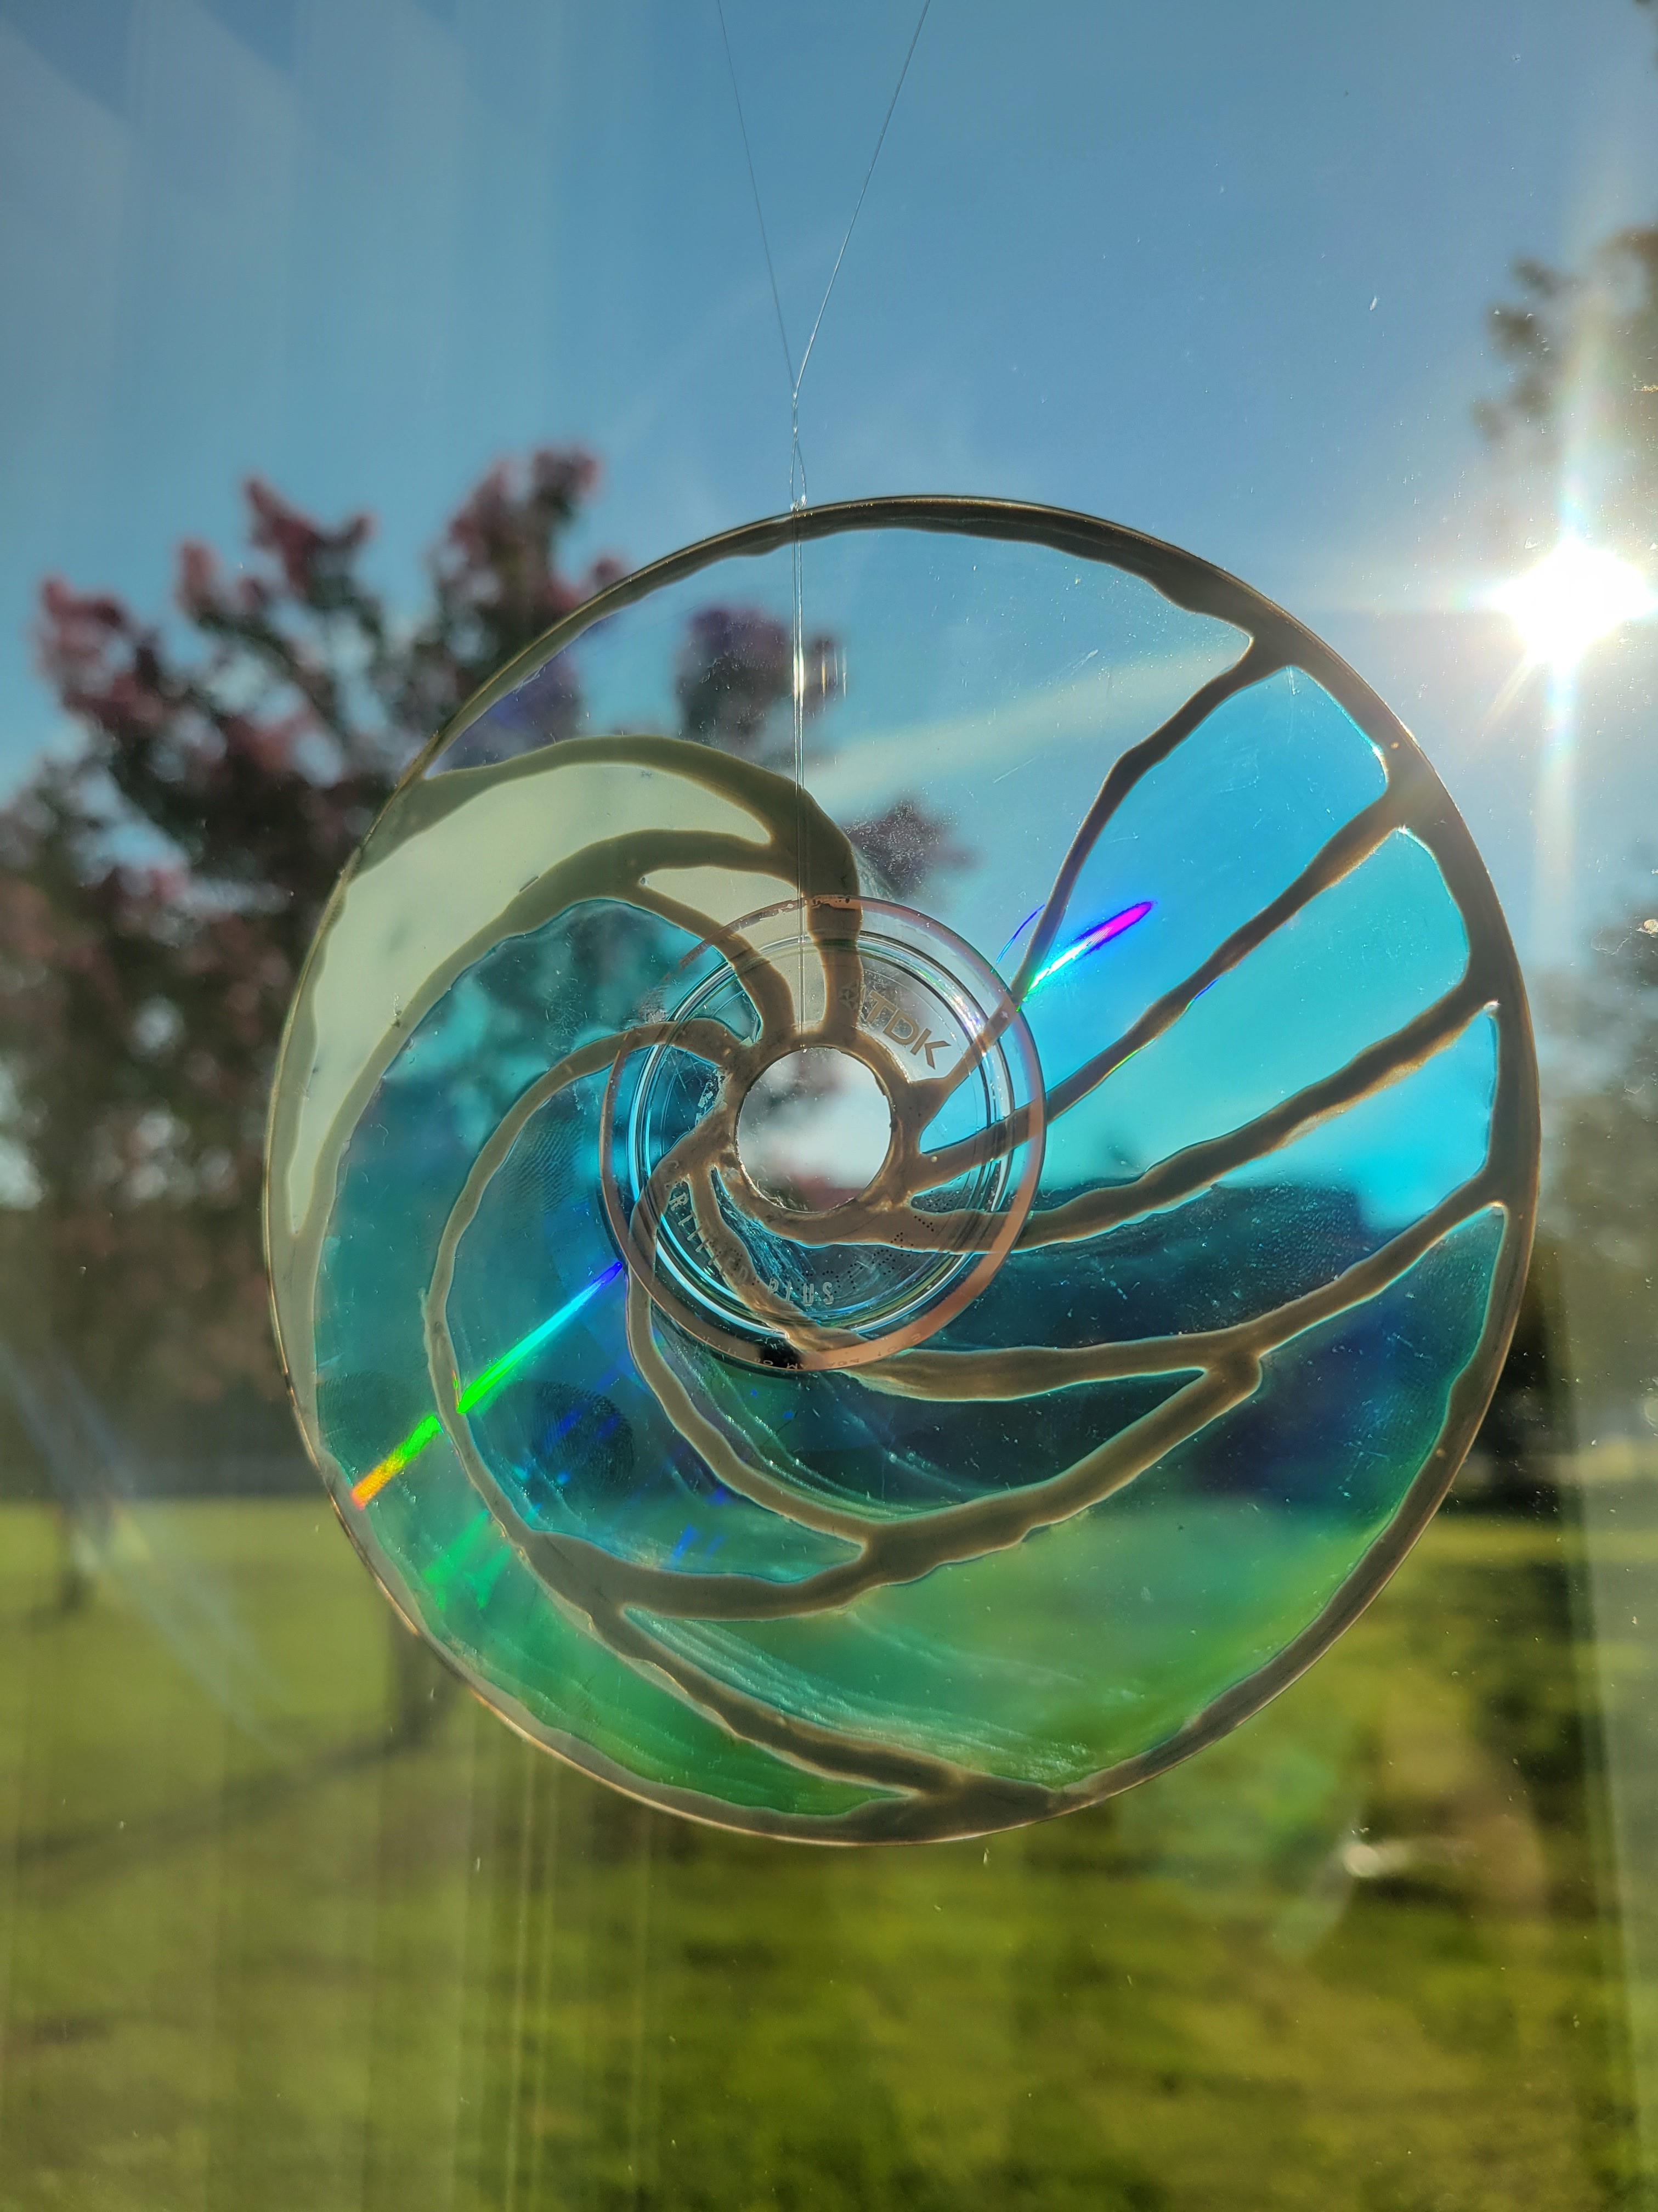 A circular suncatcher resembling a wave